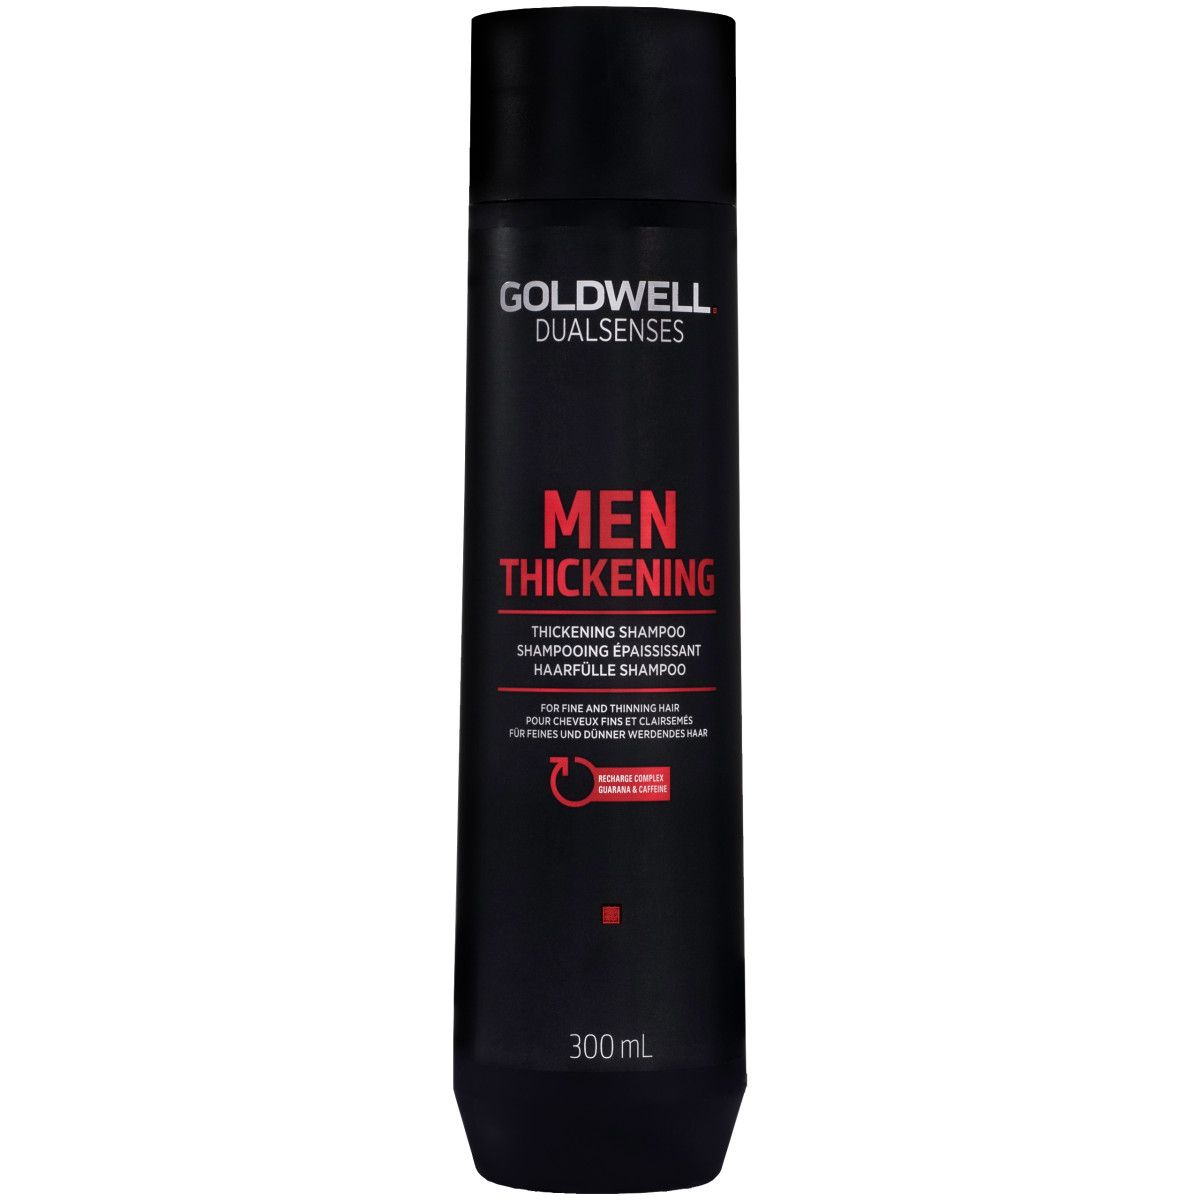 Goldwell Men Thickening, Wzmacniający szampon do włosów dla mężczyzn 300ml